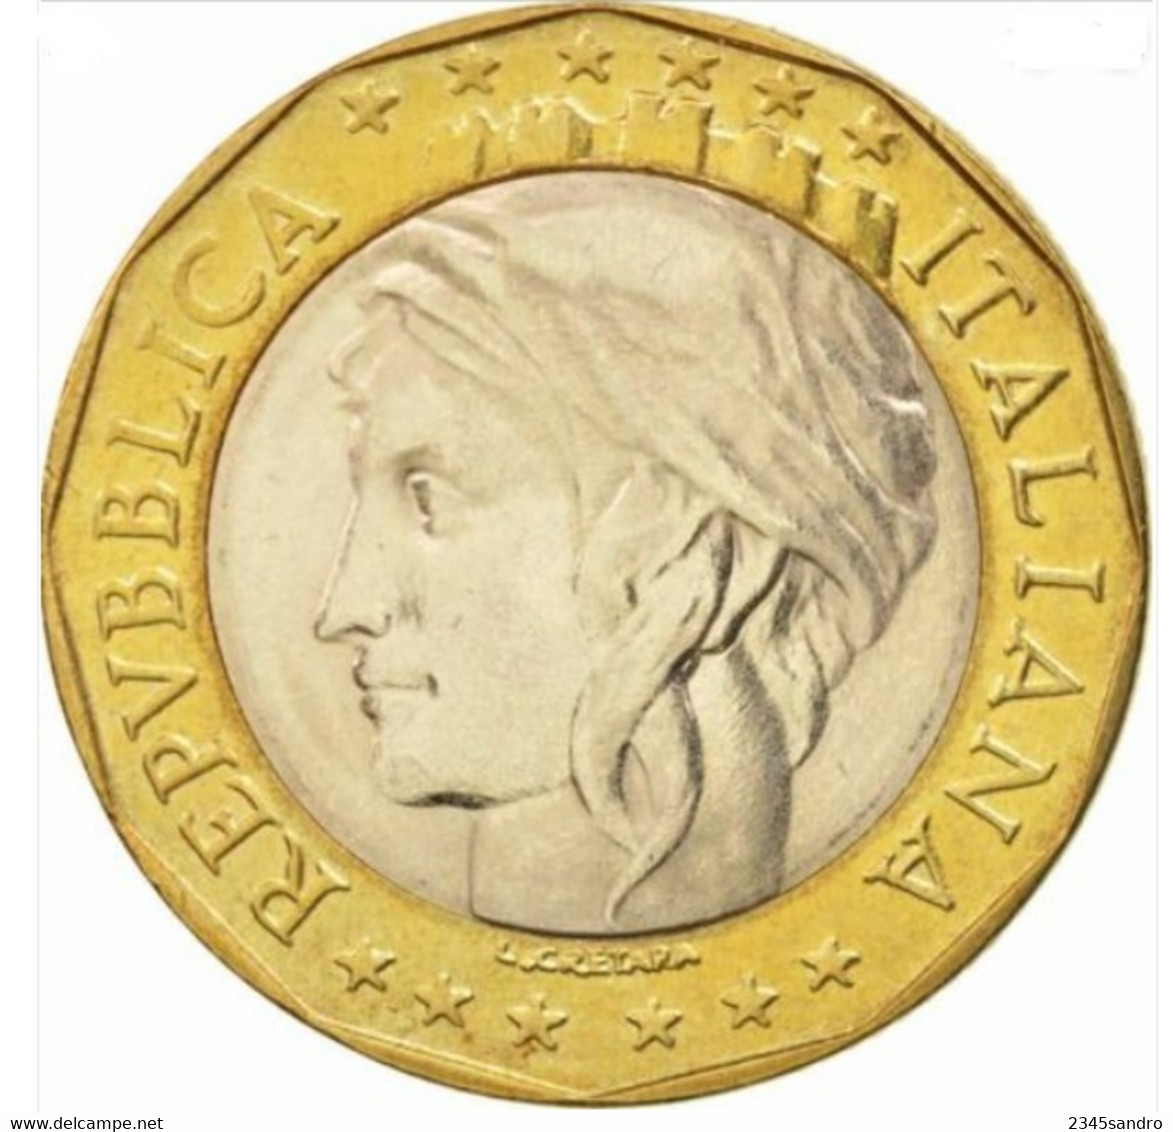 1000 Lire Confini Giusti 1997 FDC, Uncirculated, Stempelglanz, Fleur De Coin REPUBBLICA ITALIANA - 1 000 Lire